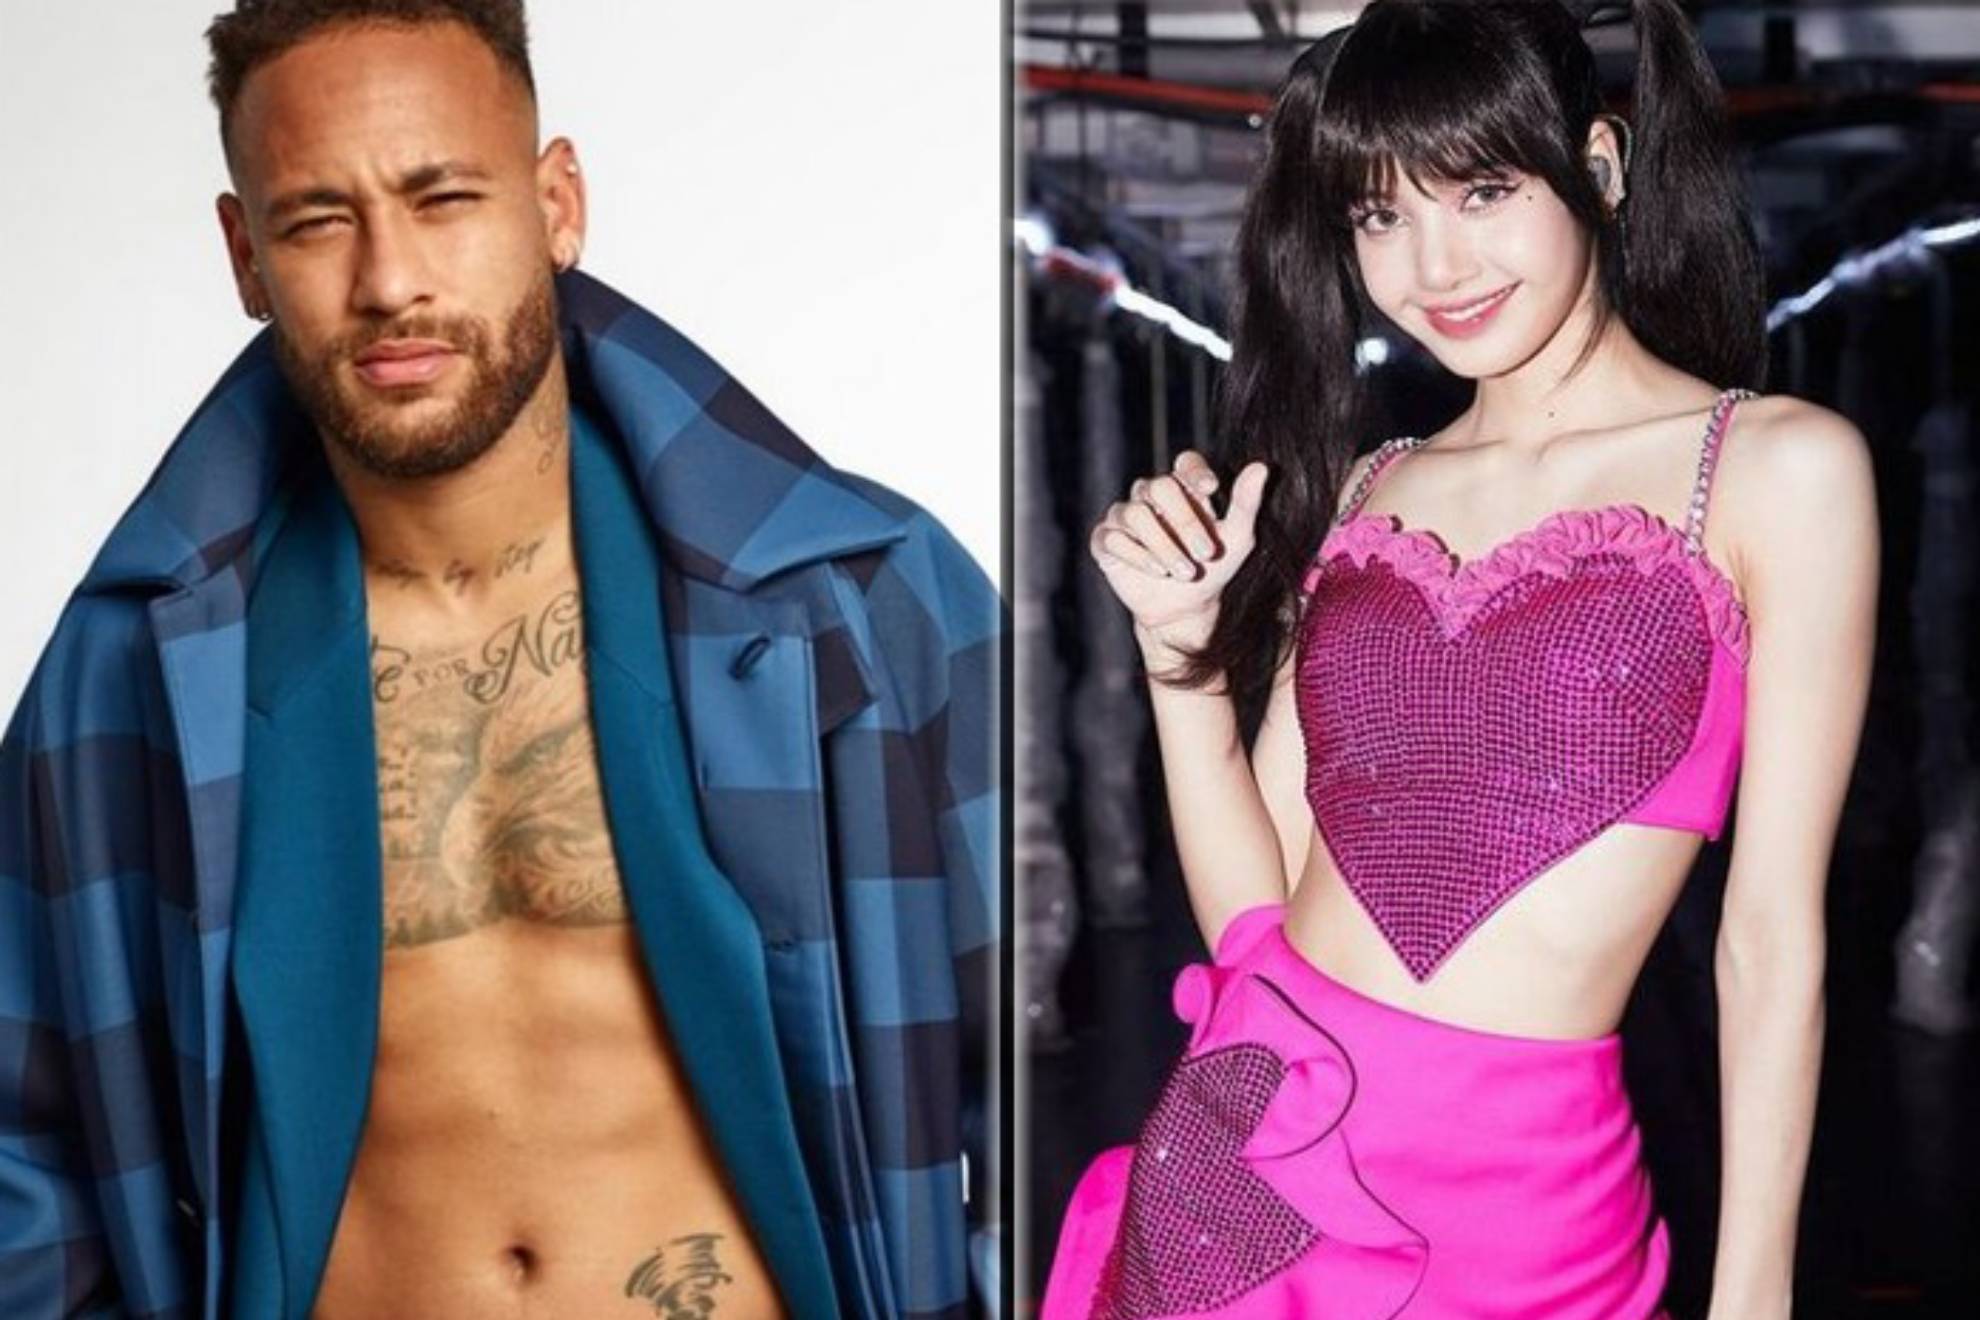 Neymar, futbolista del PSG y confeso seguidor del grupo Blackpink de K-Pop, cumplió su sueño de conocer en París a la rapera y bailarina Lisa (Lalisa Manobal), que tiene más de 87,1 millones de seguidores en Instagram.